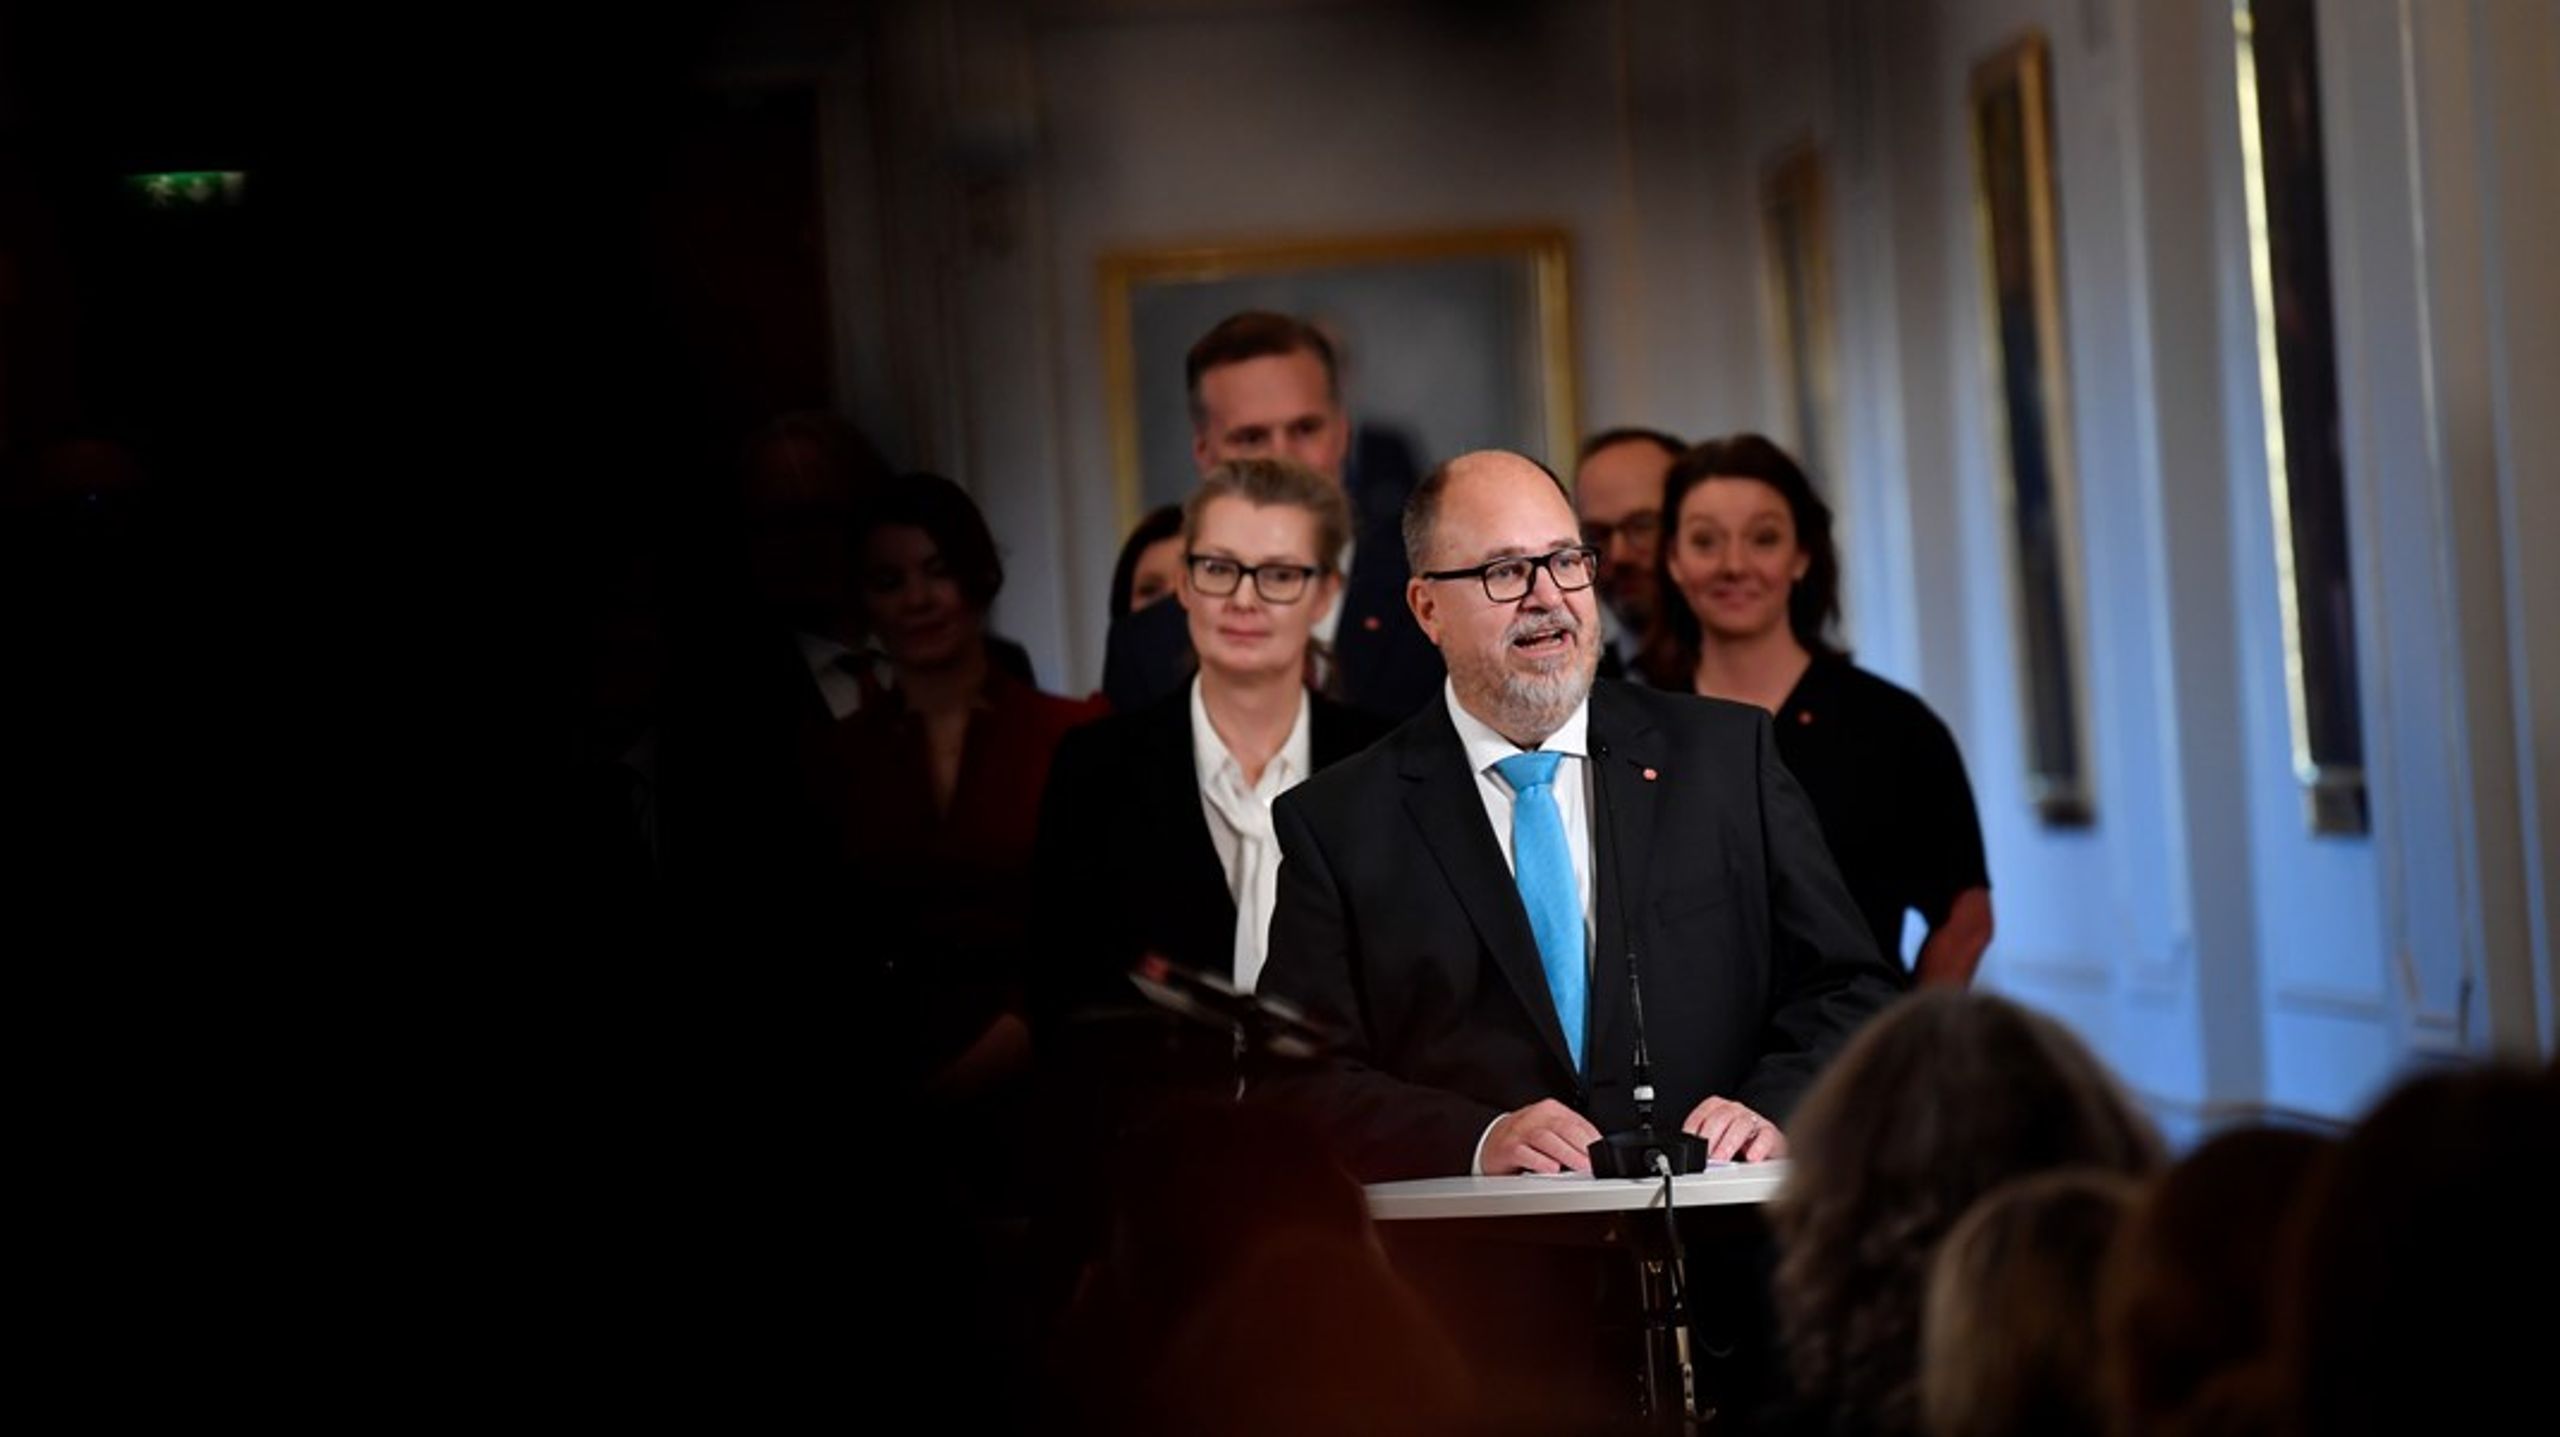 Näringsminister Karl-Petter Thorwaldssons (S) uttalande om att Socialdemokraterna älskar gruvor har inte landat väl på alla håll. Men Altingets rundringning visar att det finns ett bred stöd för en järnmalmsgruva i Kallak bland Sveriges riksdagspartier.